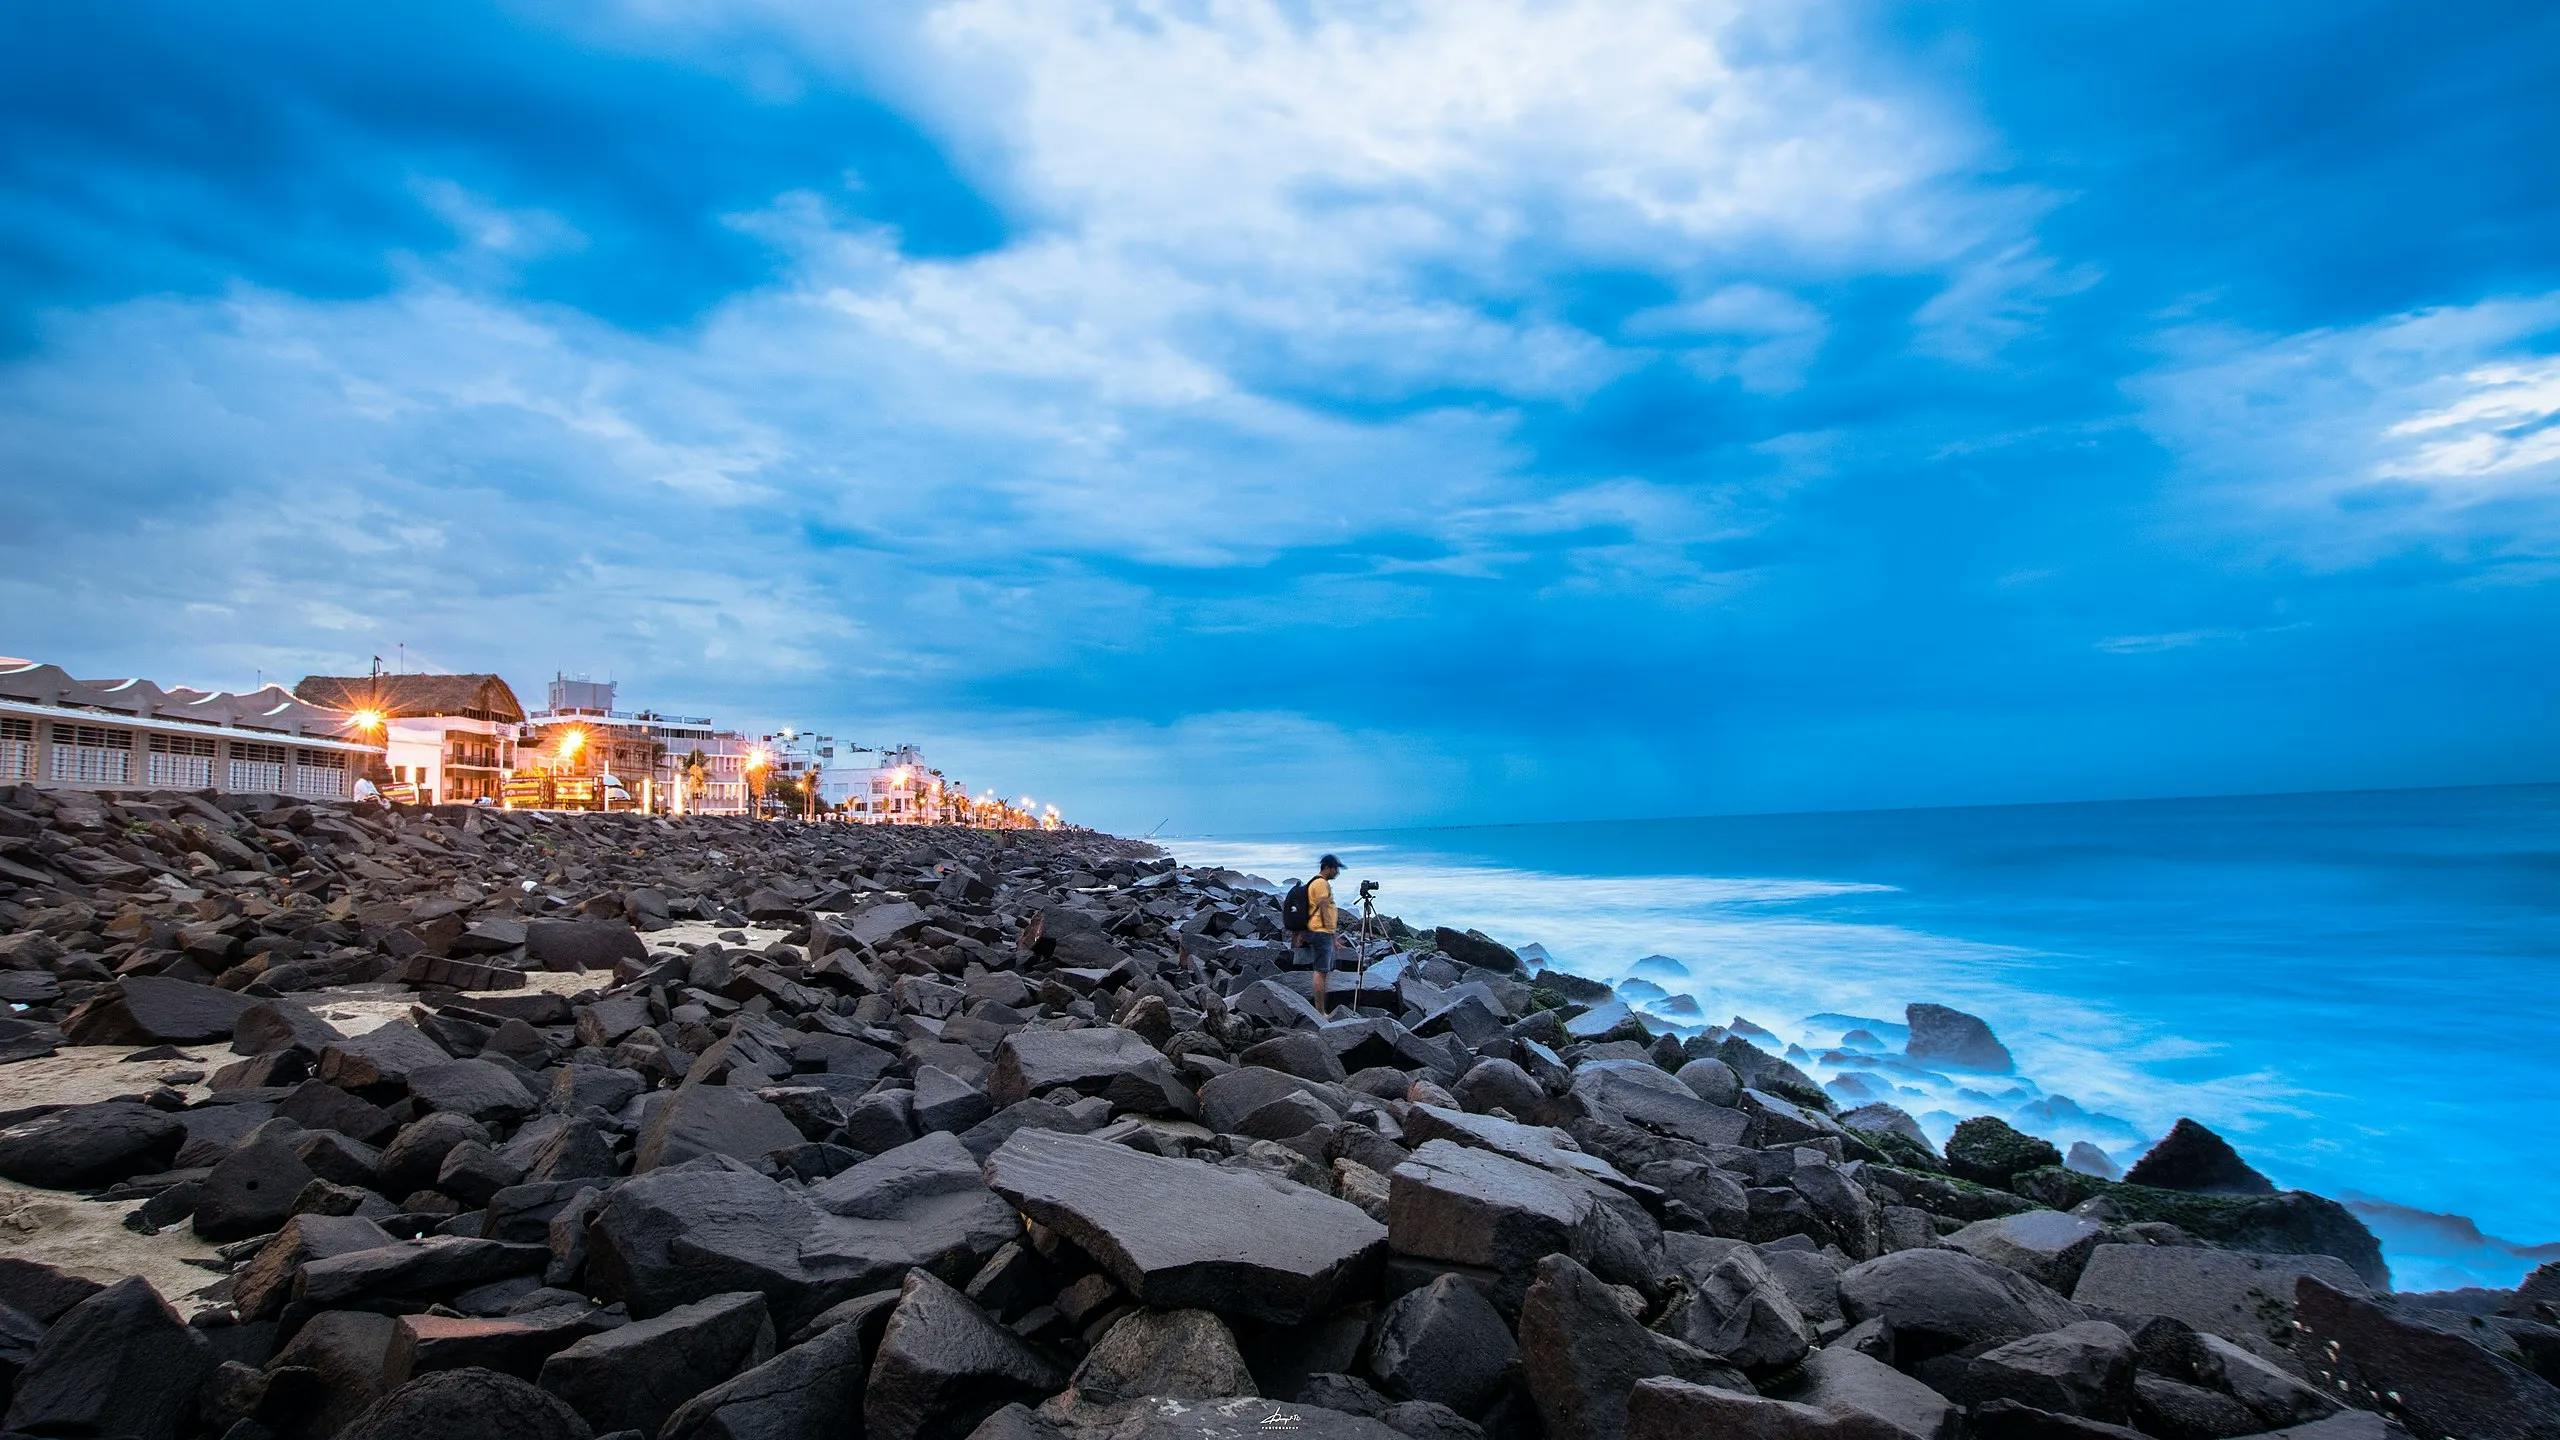 Seaside Harmony: Pondicherry Weekend Getaway with Stunning Beachside Scene